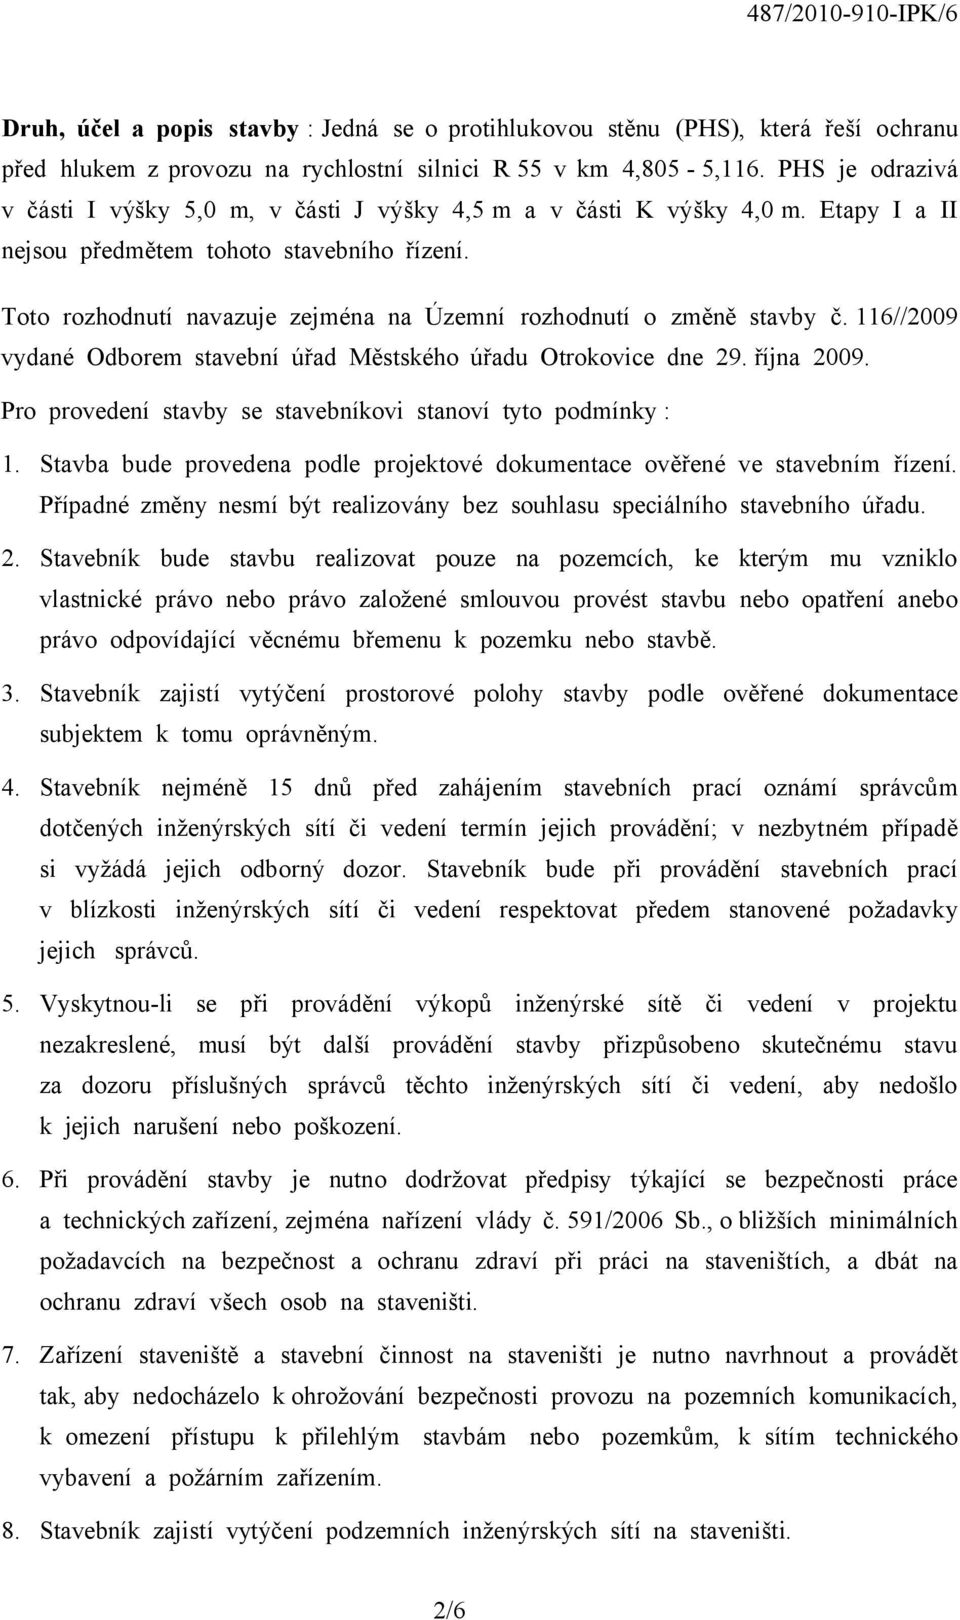 Toto rozhodnutí navazuje zejména na Územní rozhodnutí o změně stavby č. 116//2009 vydané Odborem stavební úřad Městského úřadu Otrokovice dne 29. října 2009.